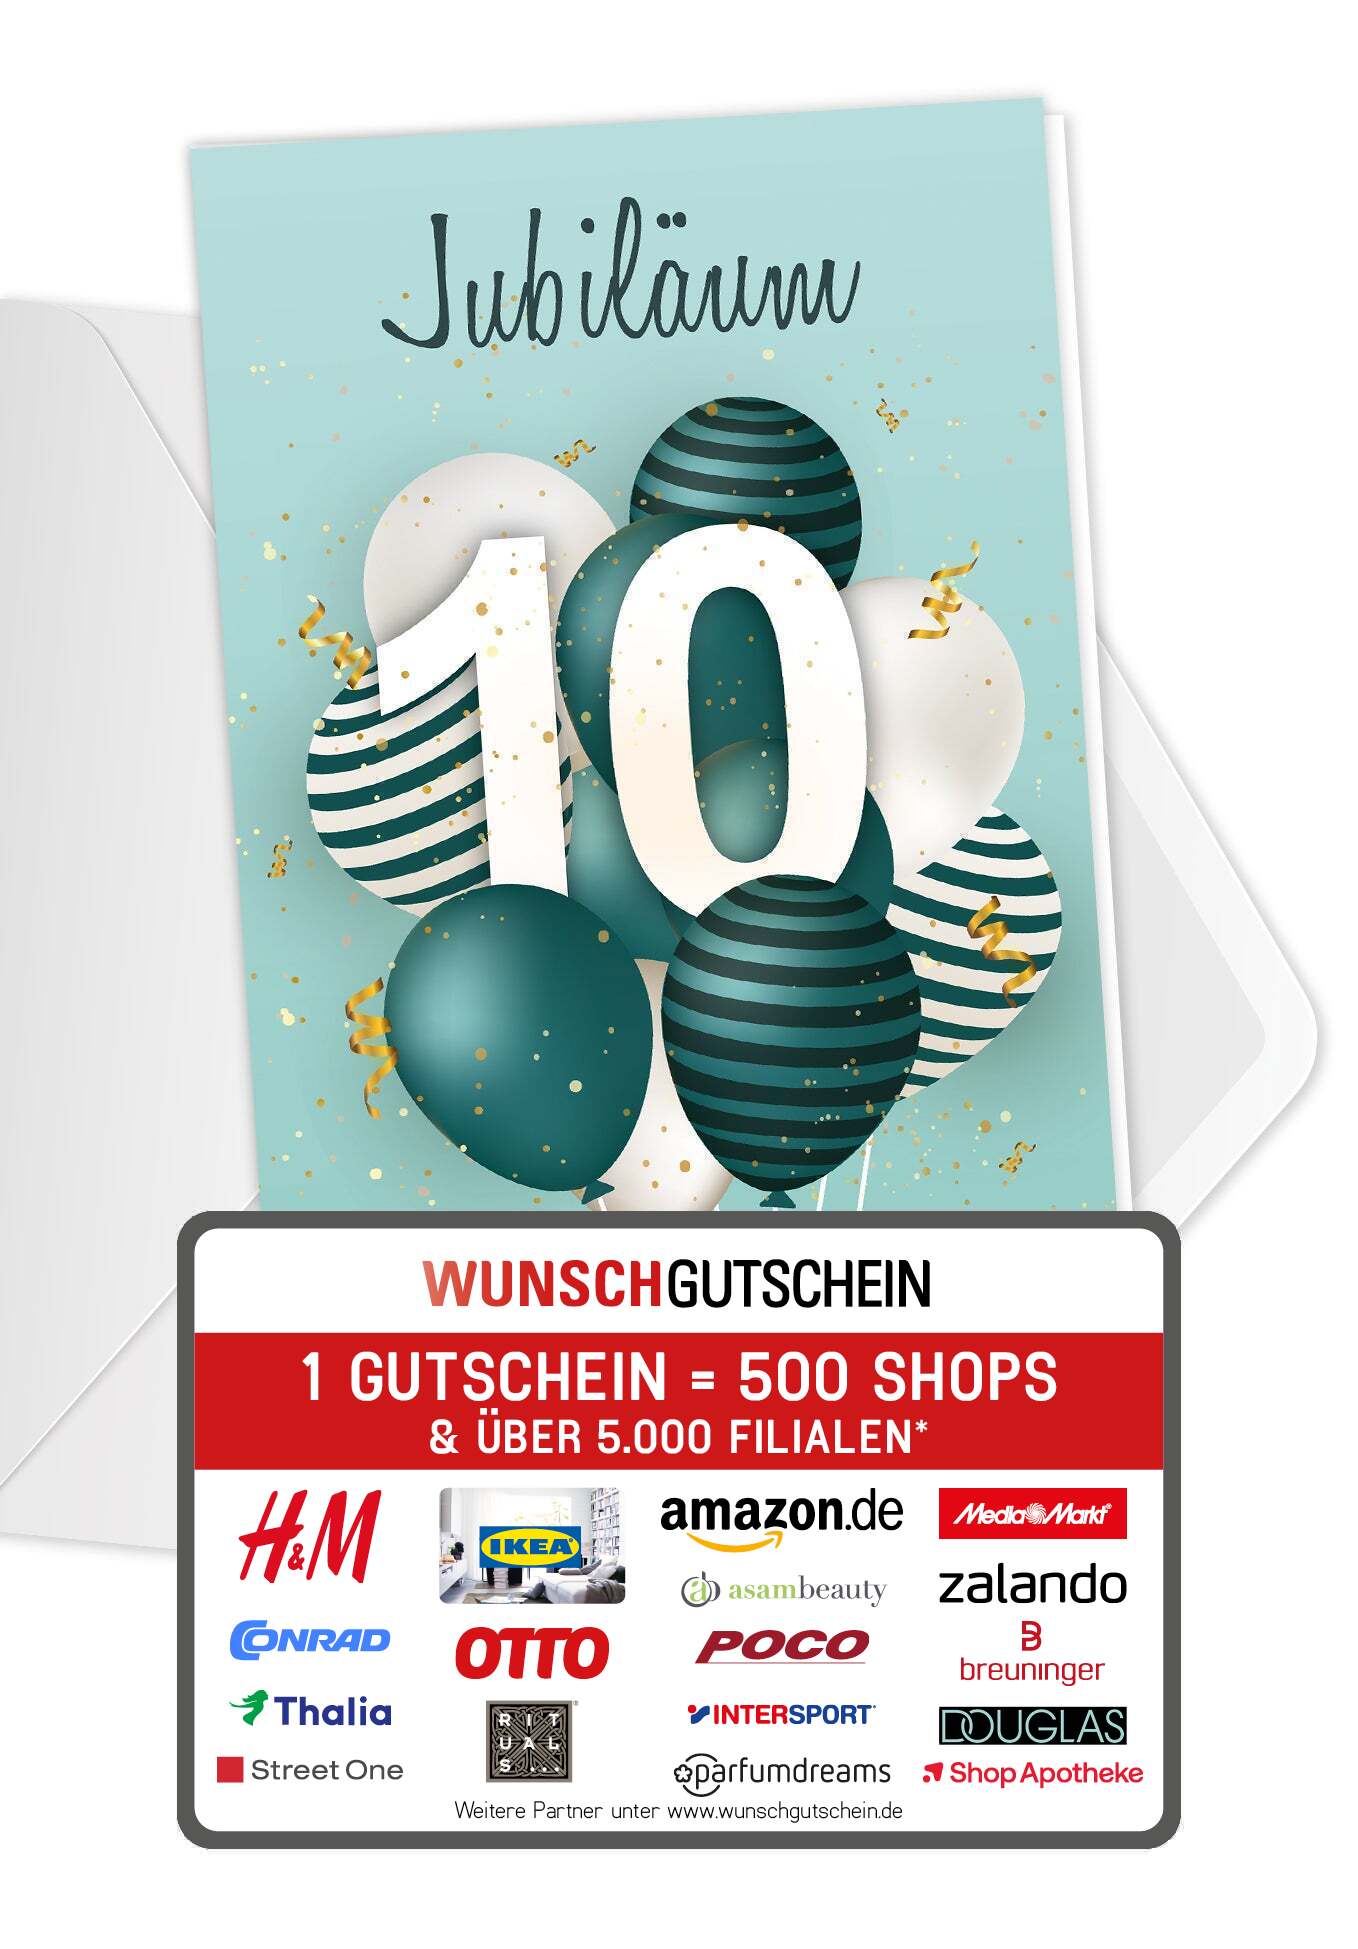 10 Jahre Jubiläum - Ballons Grün (Gutscheinwert)